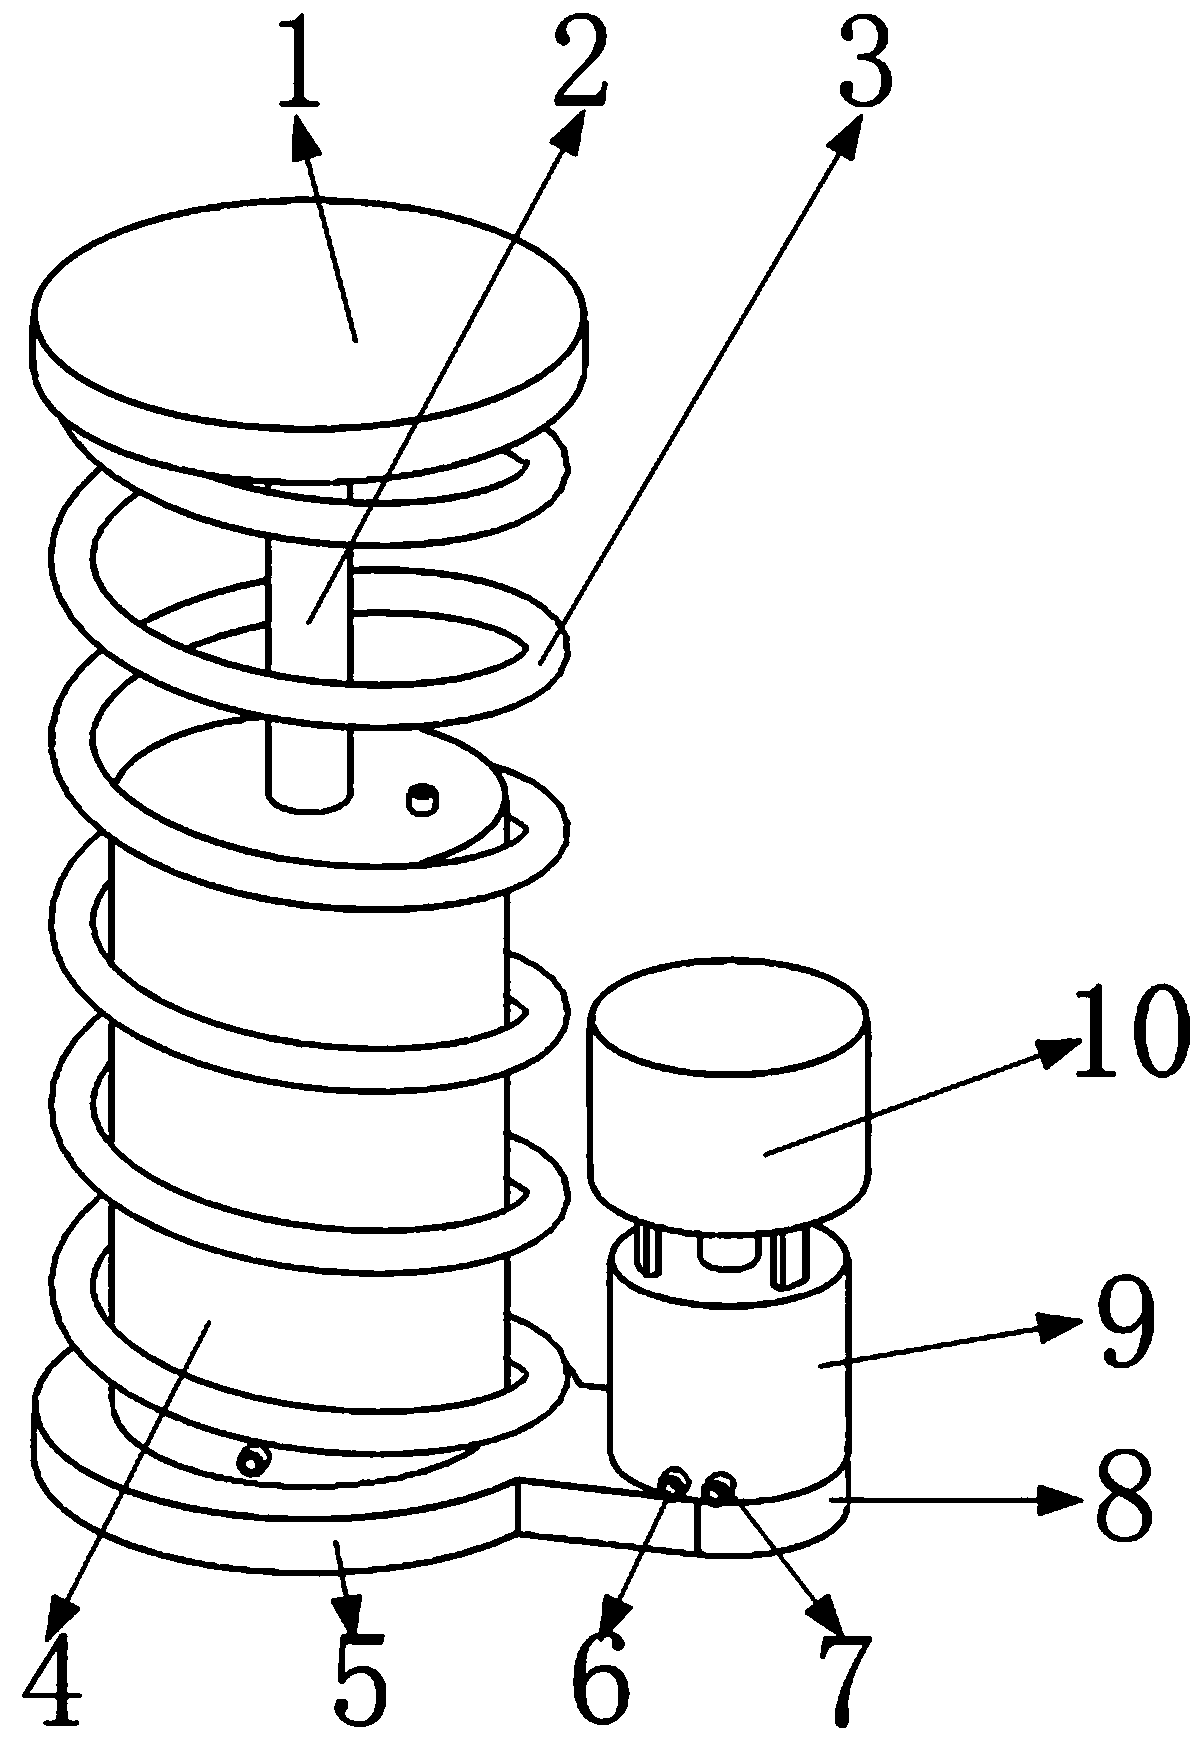 Shock-proof shock absorber based on spiral sheet